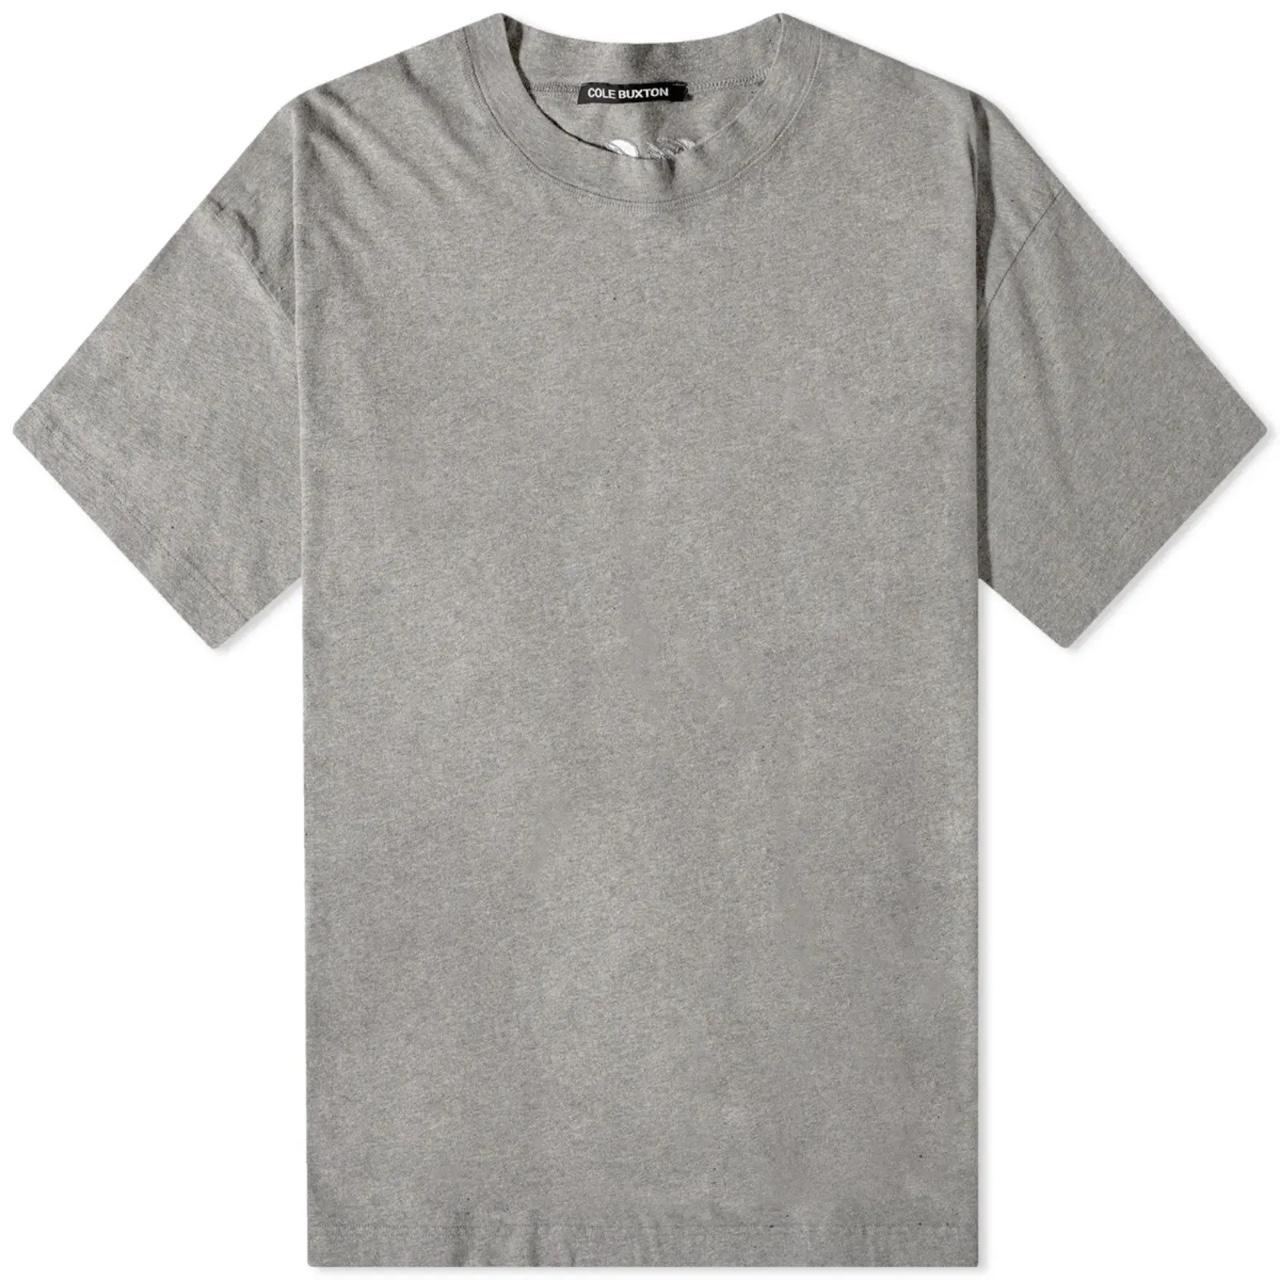 Grey Cole Buxton Tshirt - Depop